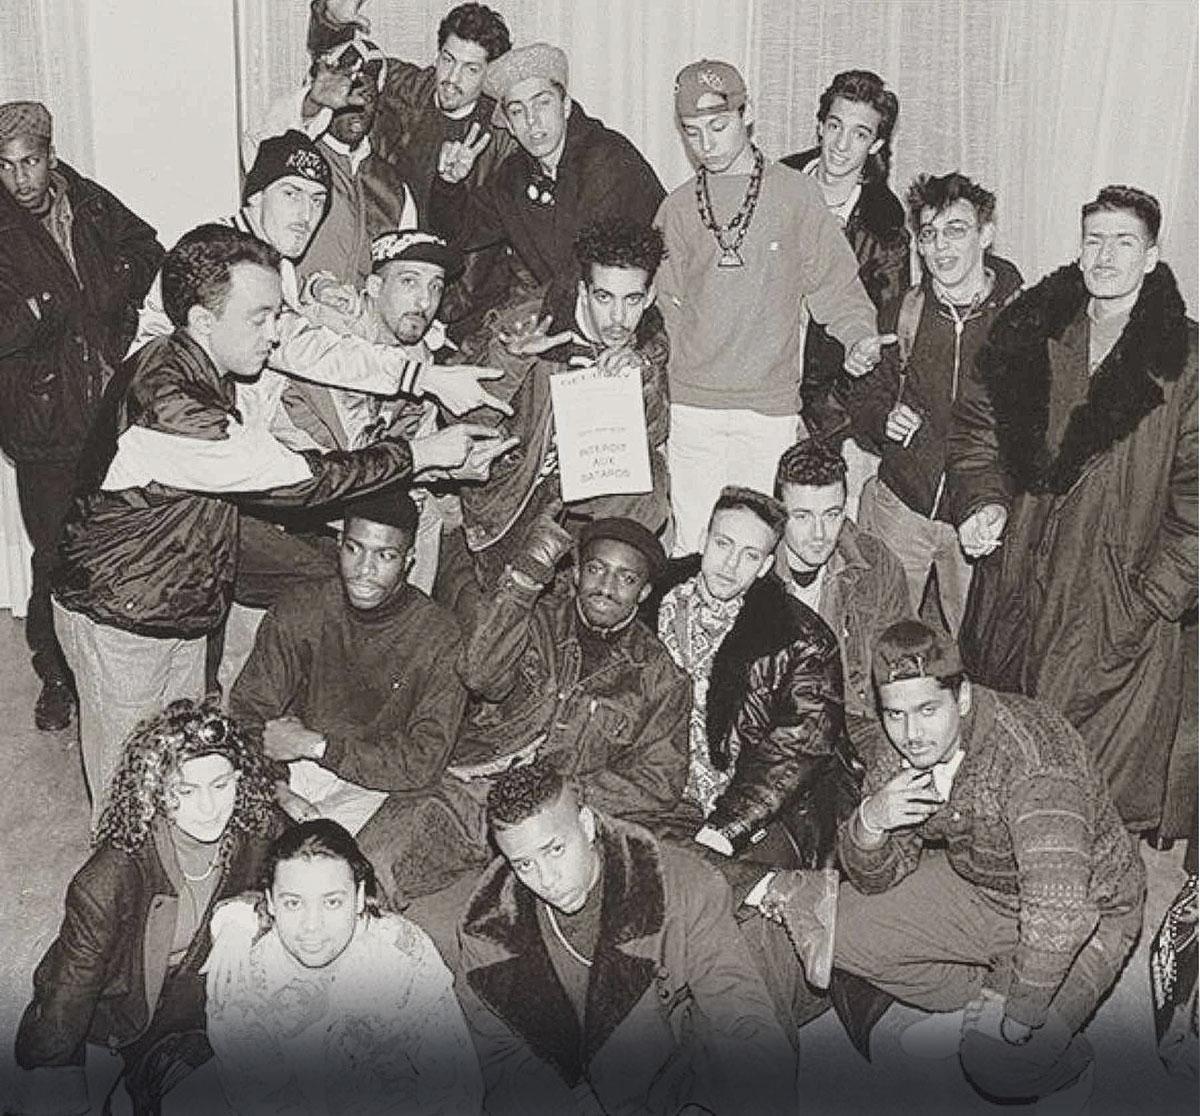 En 91, les pionniers Lionel D, MC Solaar, IAM, et un certain Sear (bonnet noir), etc. Au milieu des b-boys, le premier numéro de Get Busy.